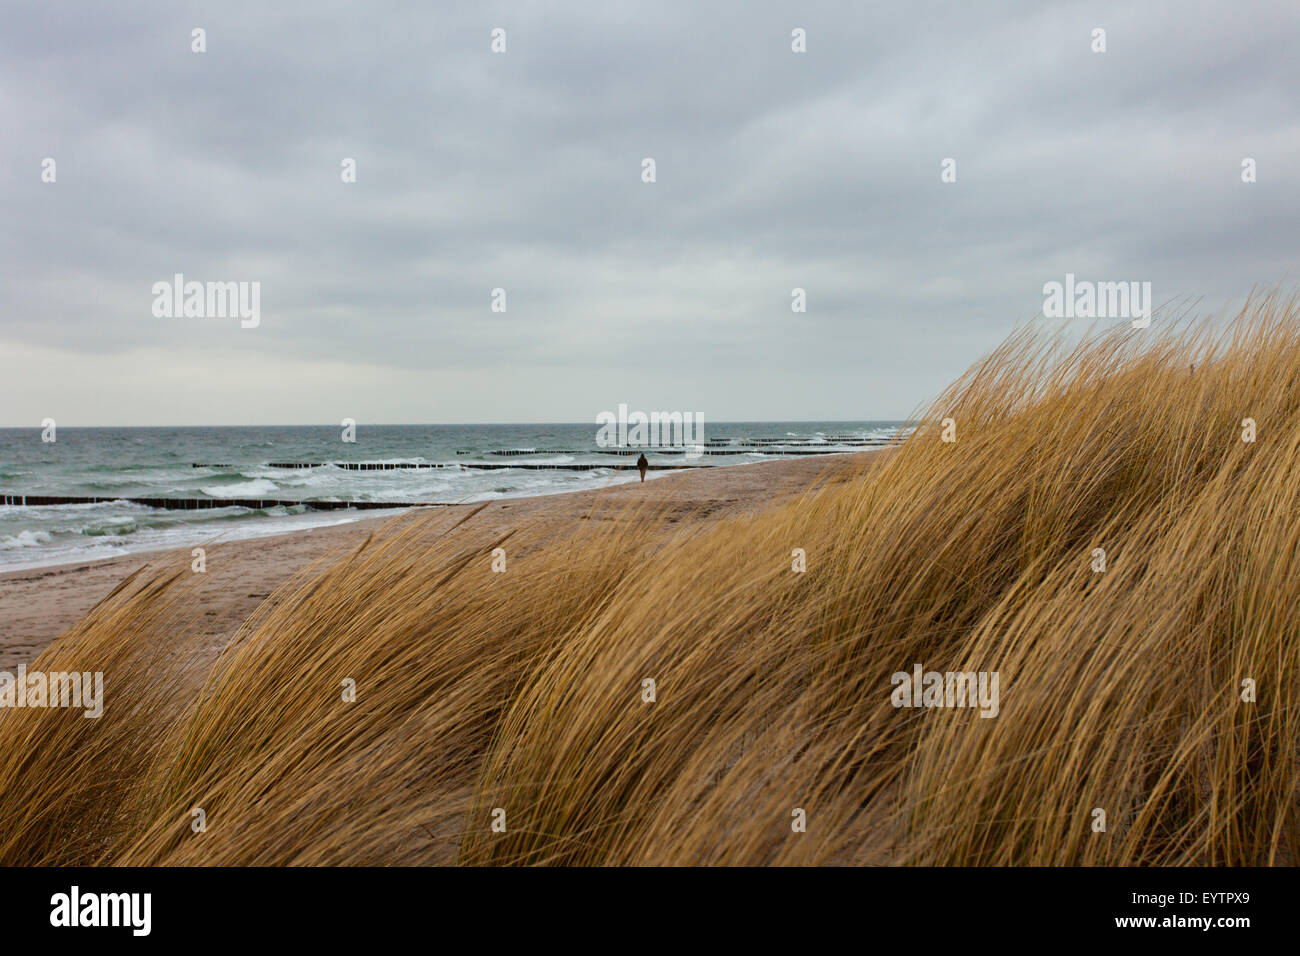 Personne, marche à pied, la plage, le sable, la mer, l'herbe, les vagues, la mer Baltique, l'hiver, Allemagne Banque D'Images